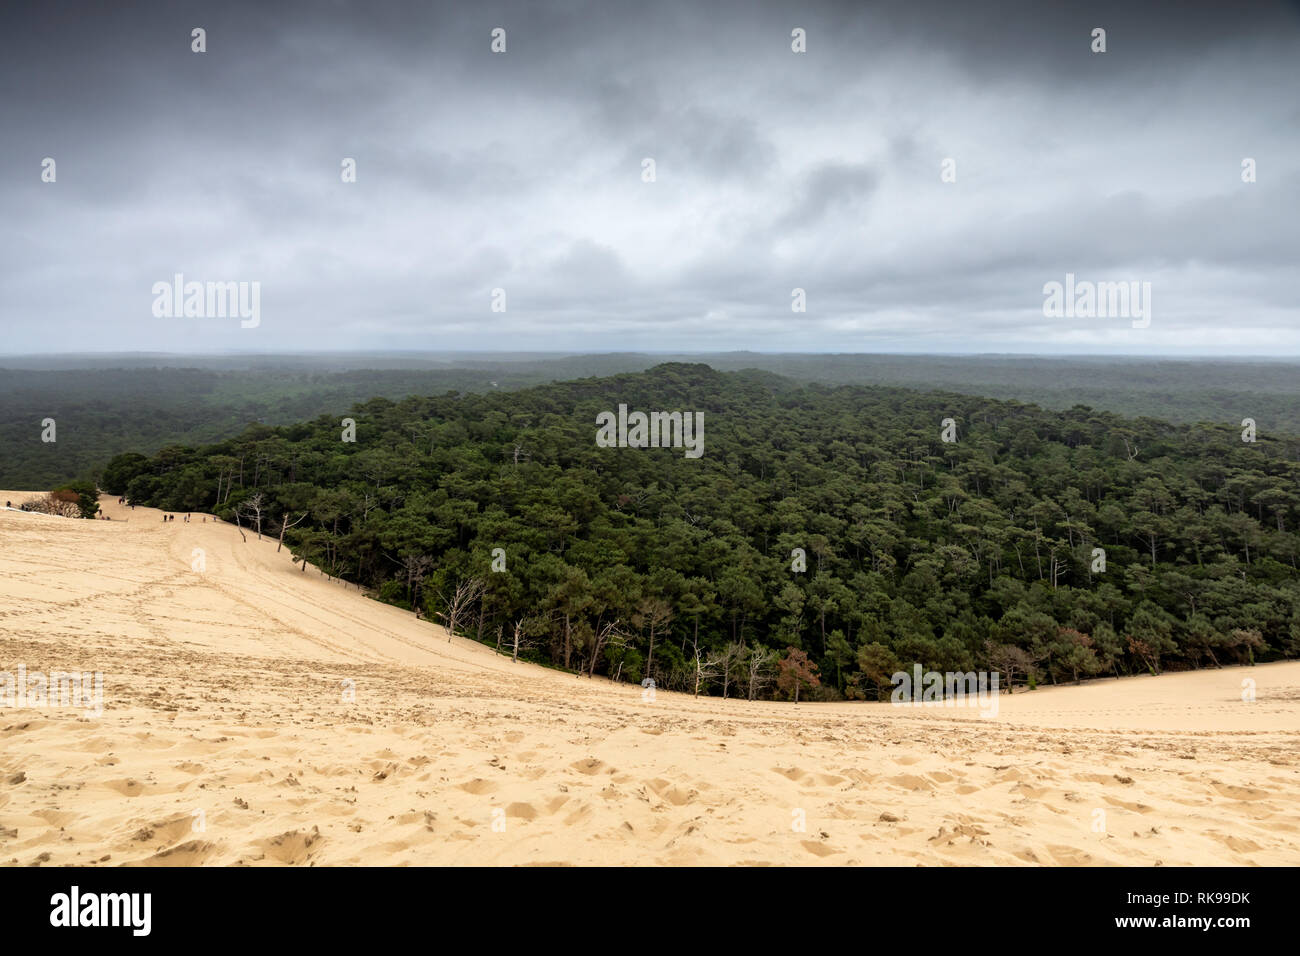 La Duna di Pilat è la duna di sabbia più alta d'Europa, situata a la teste-de-Buch nella zona della baia di Arcachon in Francia, a 60 km da Bordeaux. Foto Stock